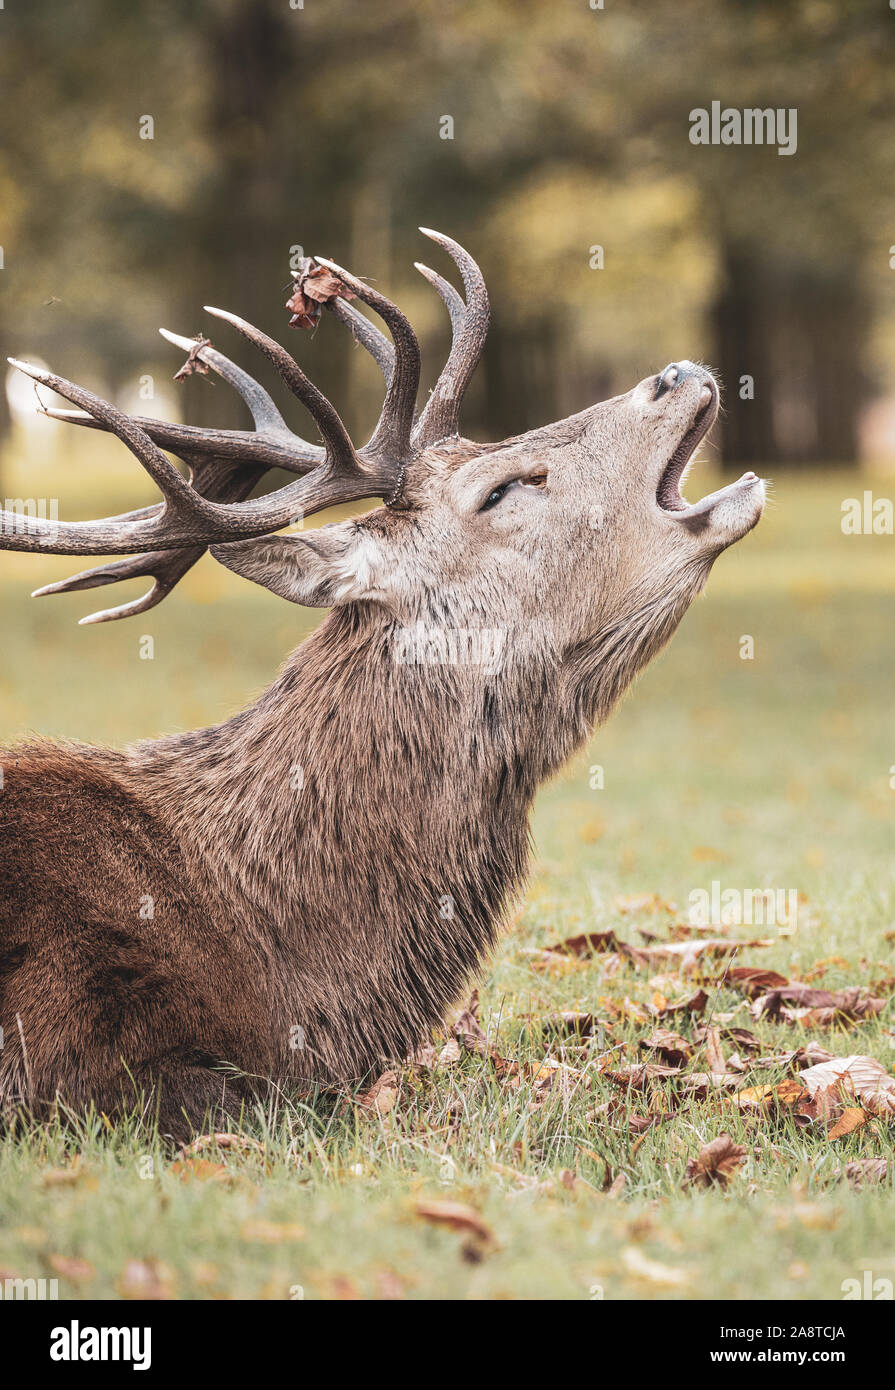 Une famille red deer stag appelant dans les bois du Bushy Park, Londres, en Angleterre. Pris un froid et brumeux matin d'automne au cours de saison du rut Banque D'Images